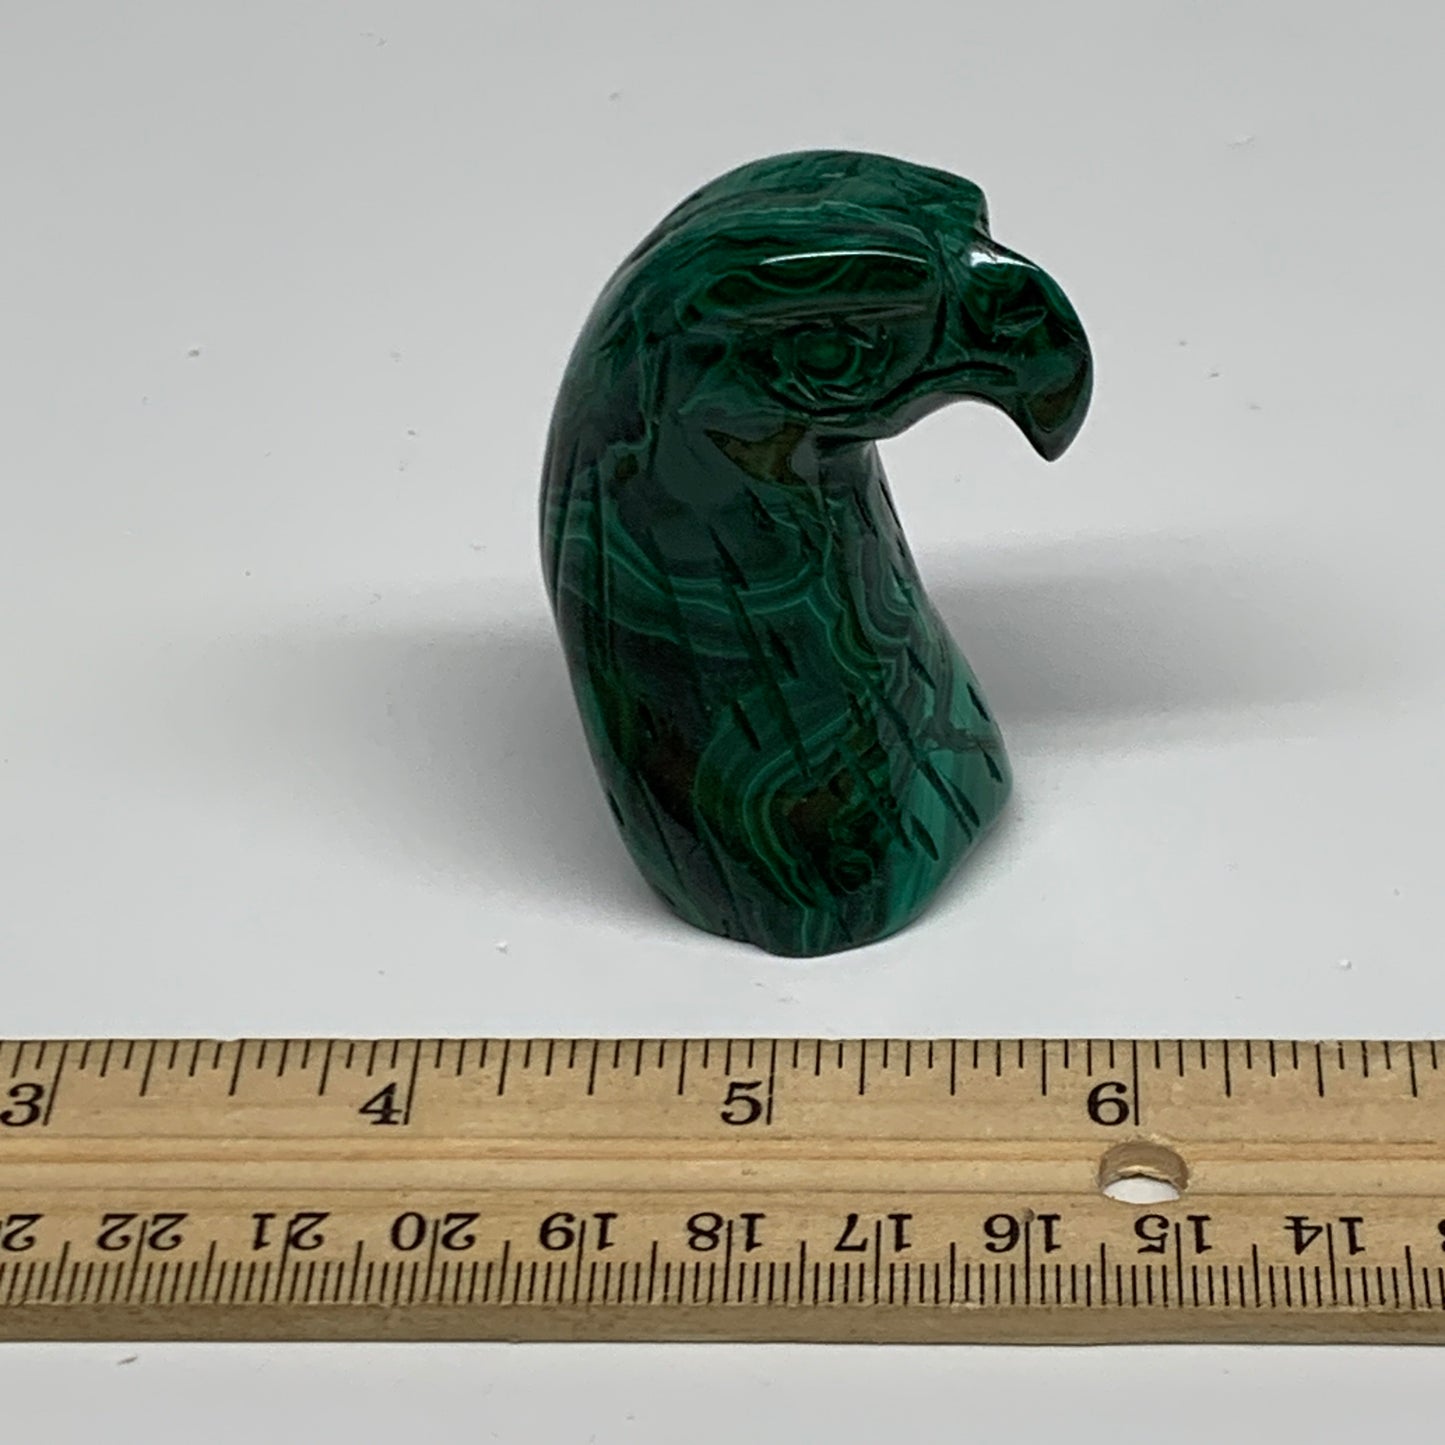 121.5g, 2.2"x1"x1.2" Natural Solid Malachite Eagle/Falcon Figurine @Congo, B3273